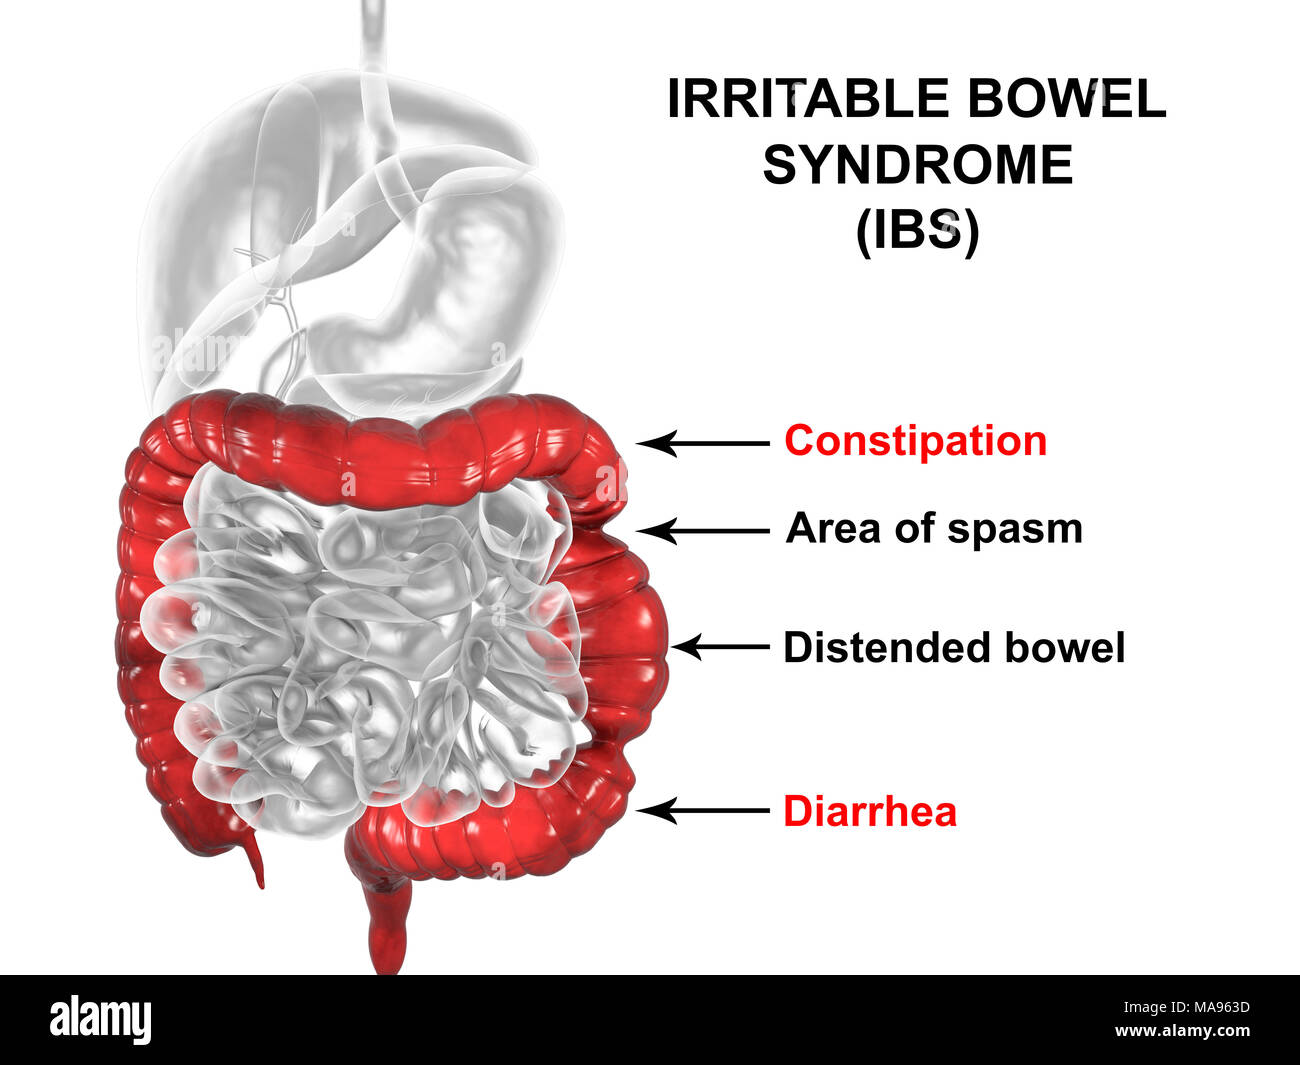 Sindrome da Intestino Irritabile. Illustrazione di un sistema digestivo che  soffrono di sindrome da intestino irritabile (IBS). IBS è noto anche come  colon spastico o sindrome del colon irritabile. Essa provoca dolore